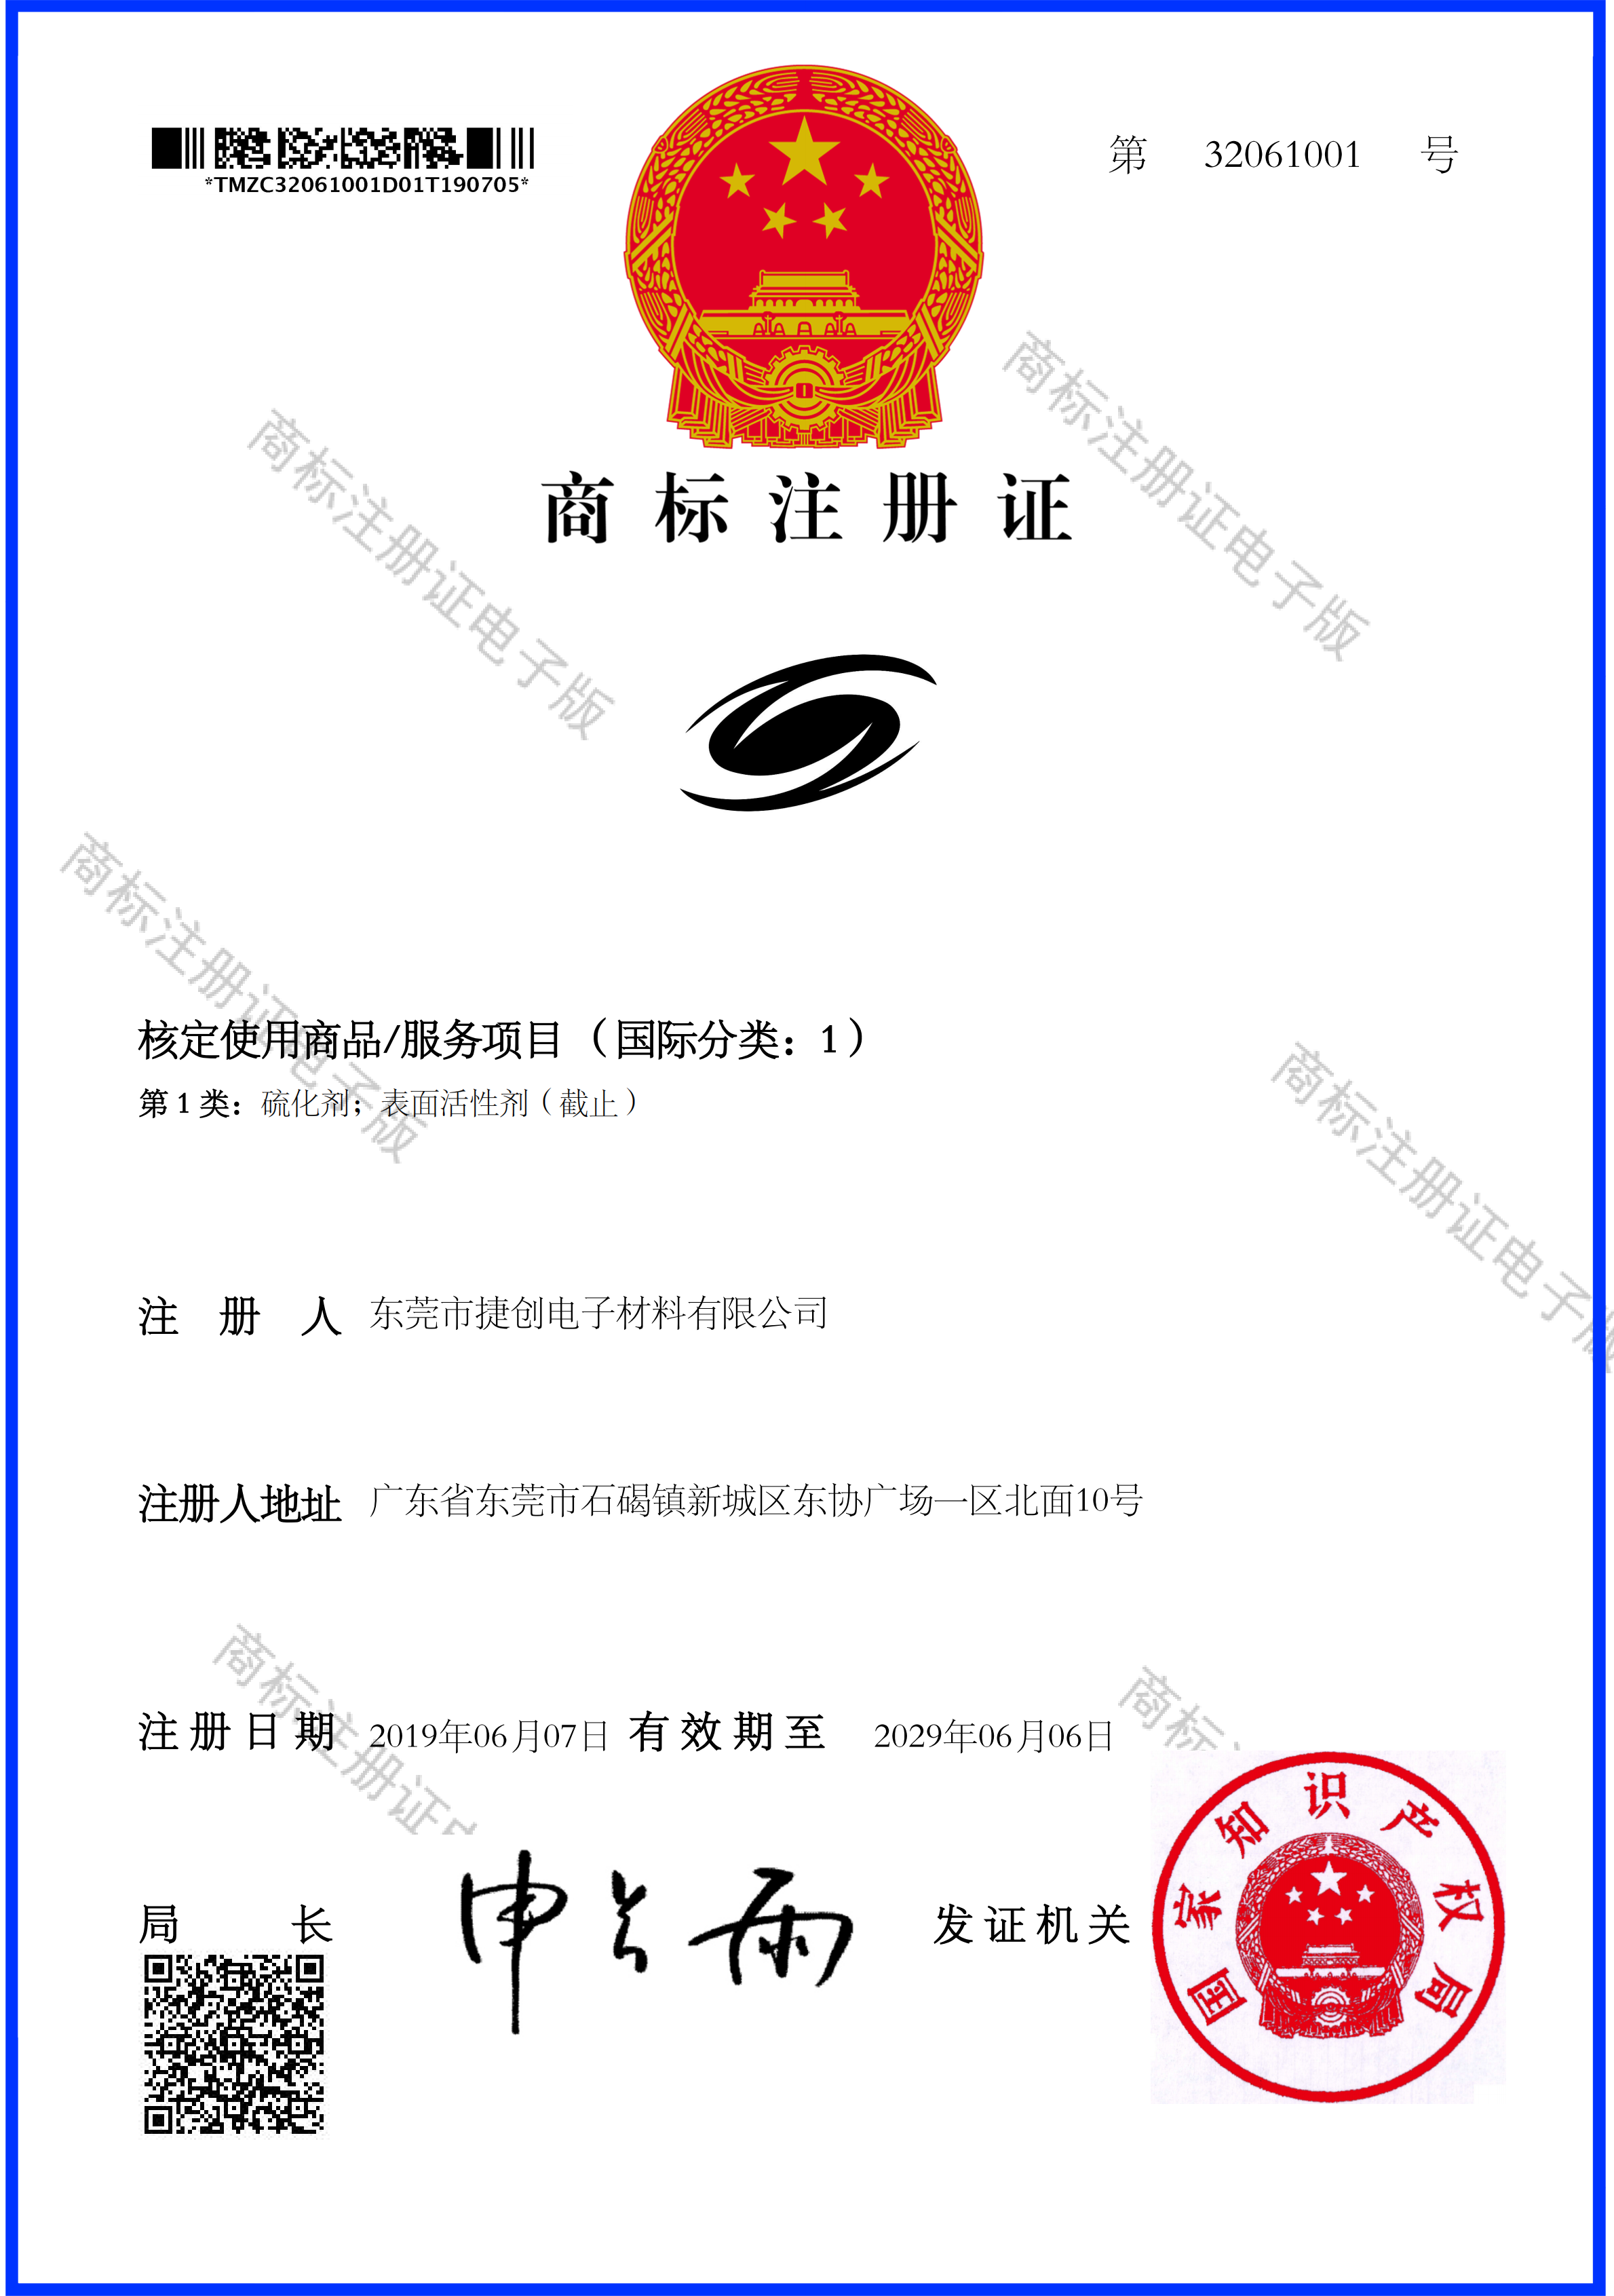 东莞市捷创电子材料有限公司-商标注册证-图形_00